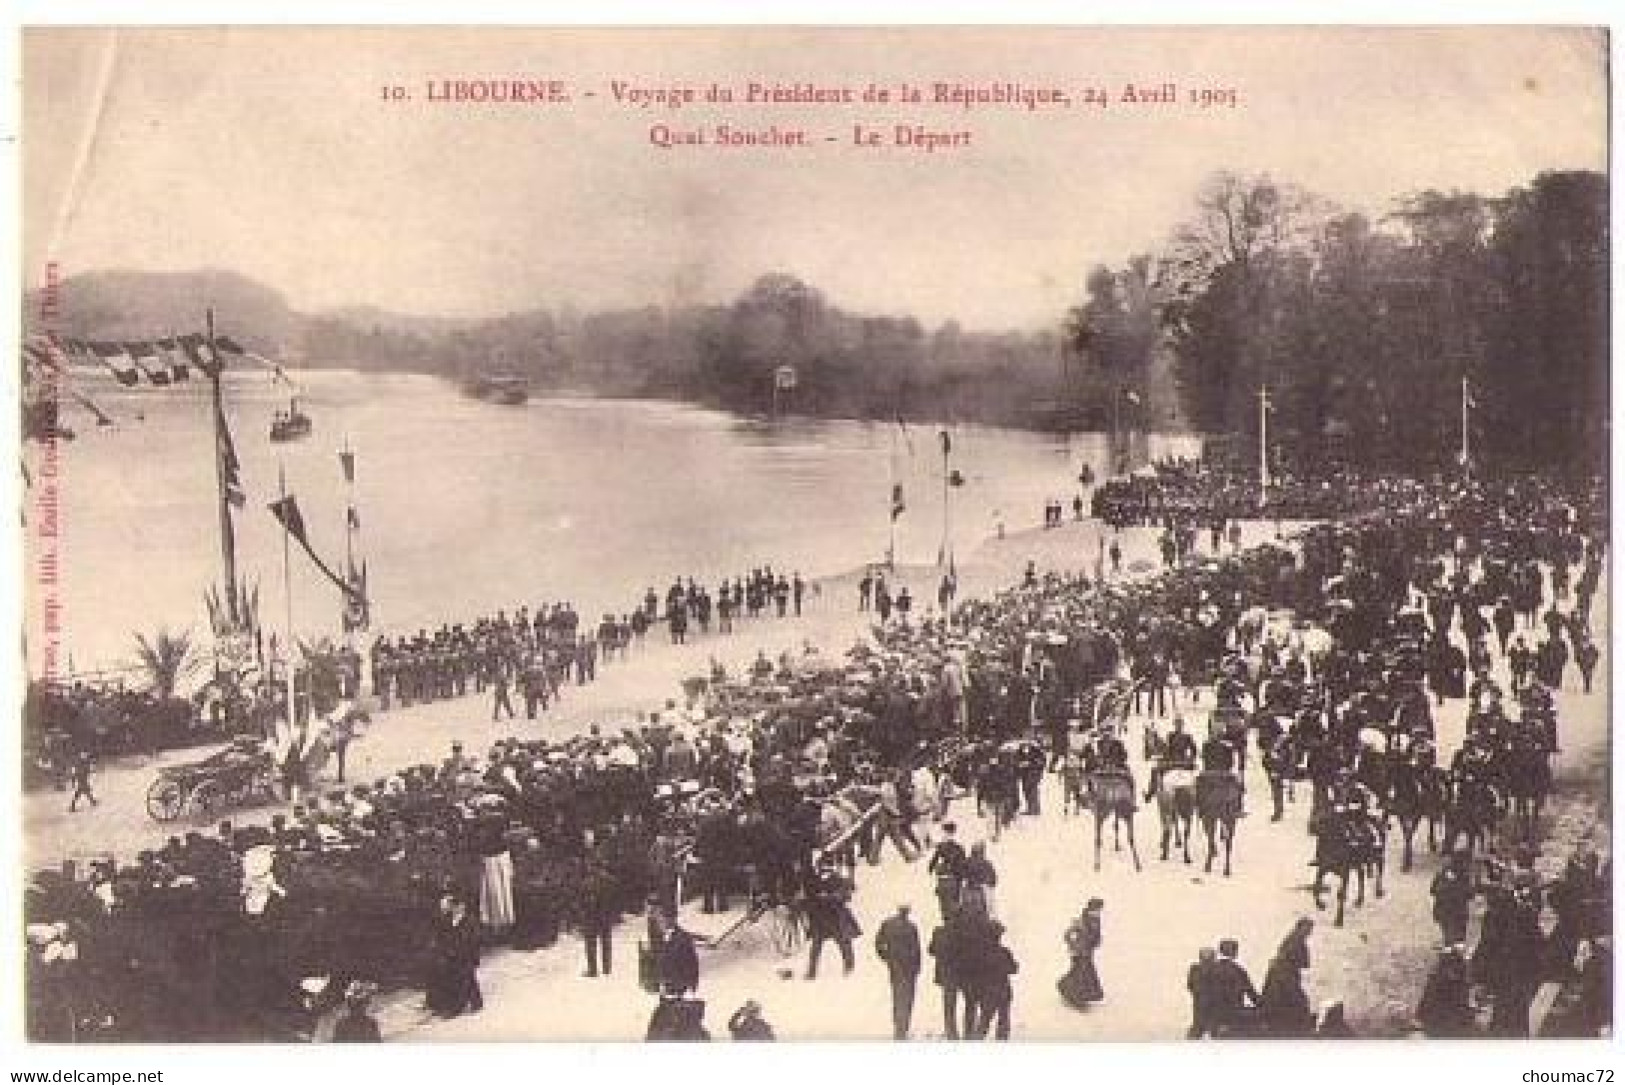 (33) 228, Libourne, Voyage Du Président De La République 1905, Guillier 10, Quai Souchet, Le Départ - Libourne